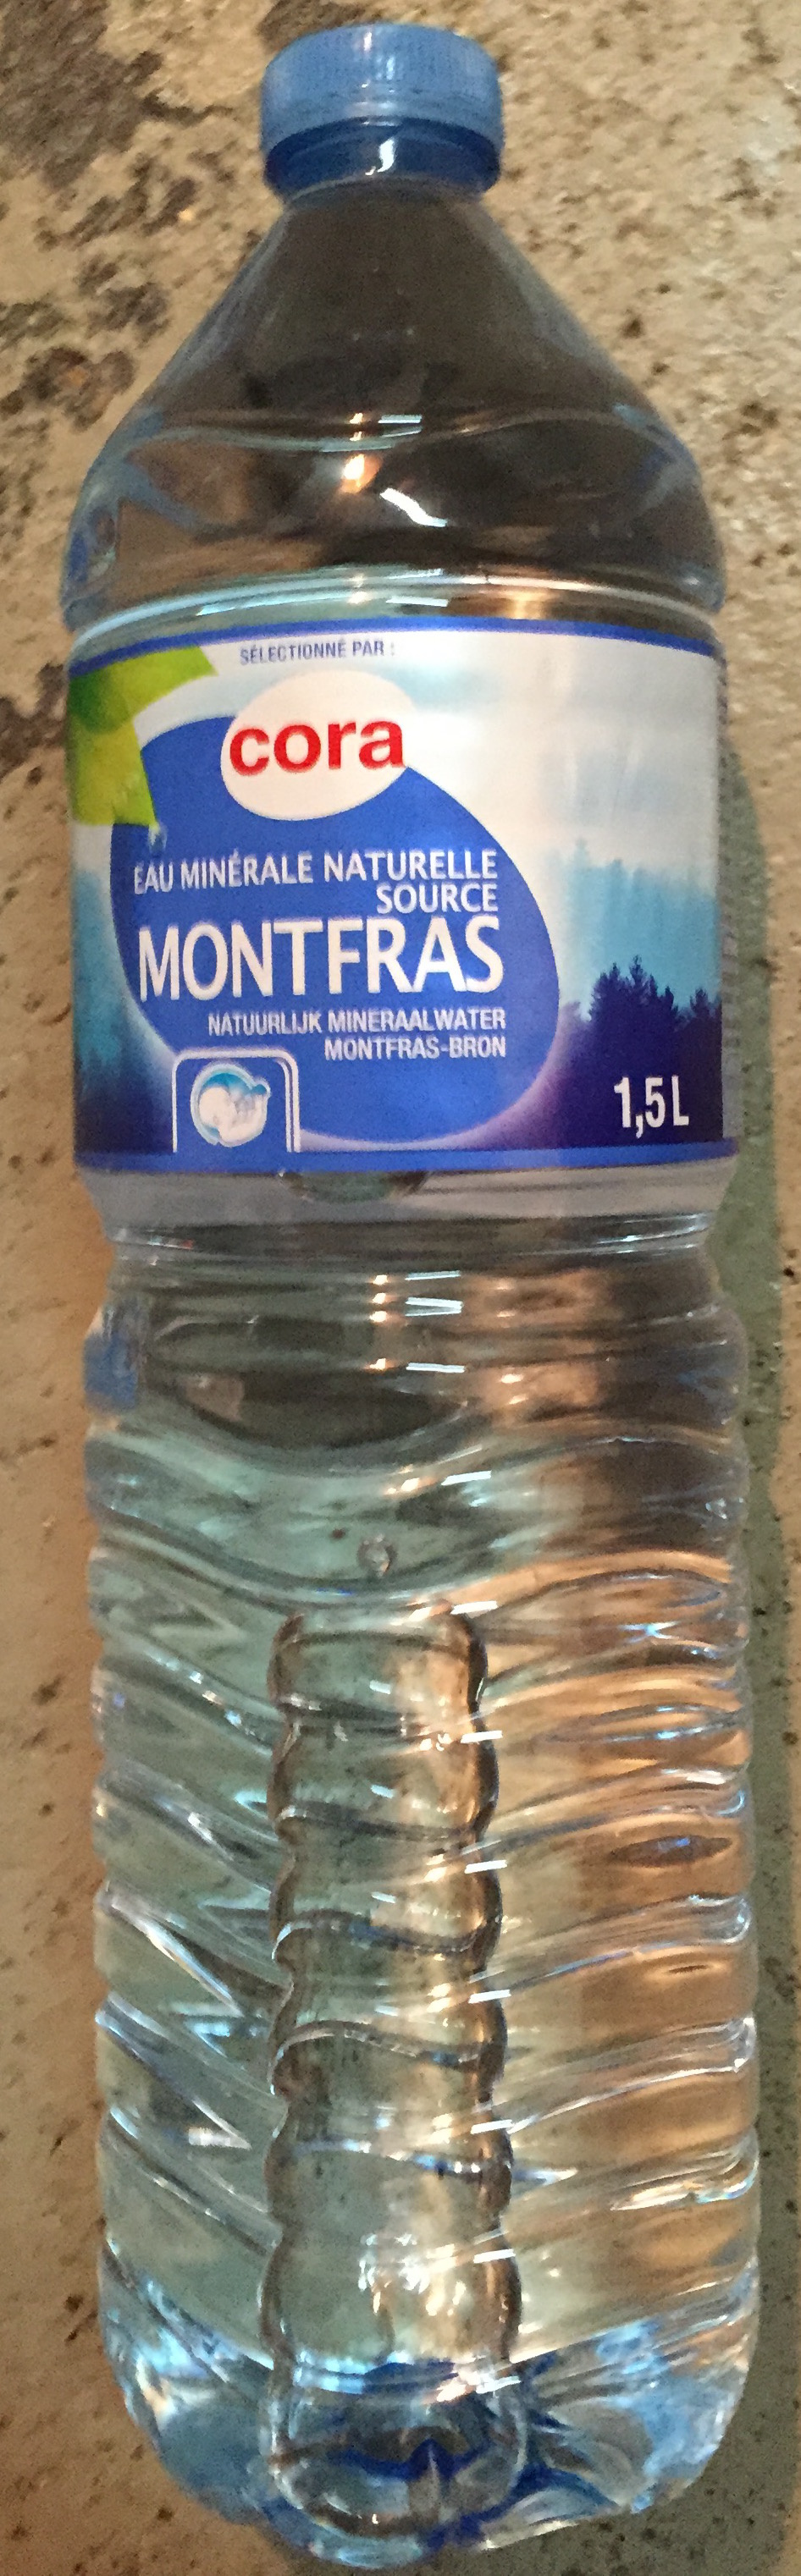 Eau minérale naturelle source Montfras - Product - fr